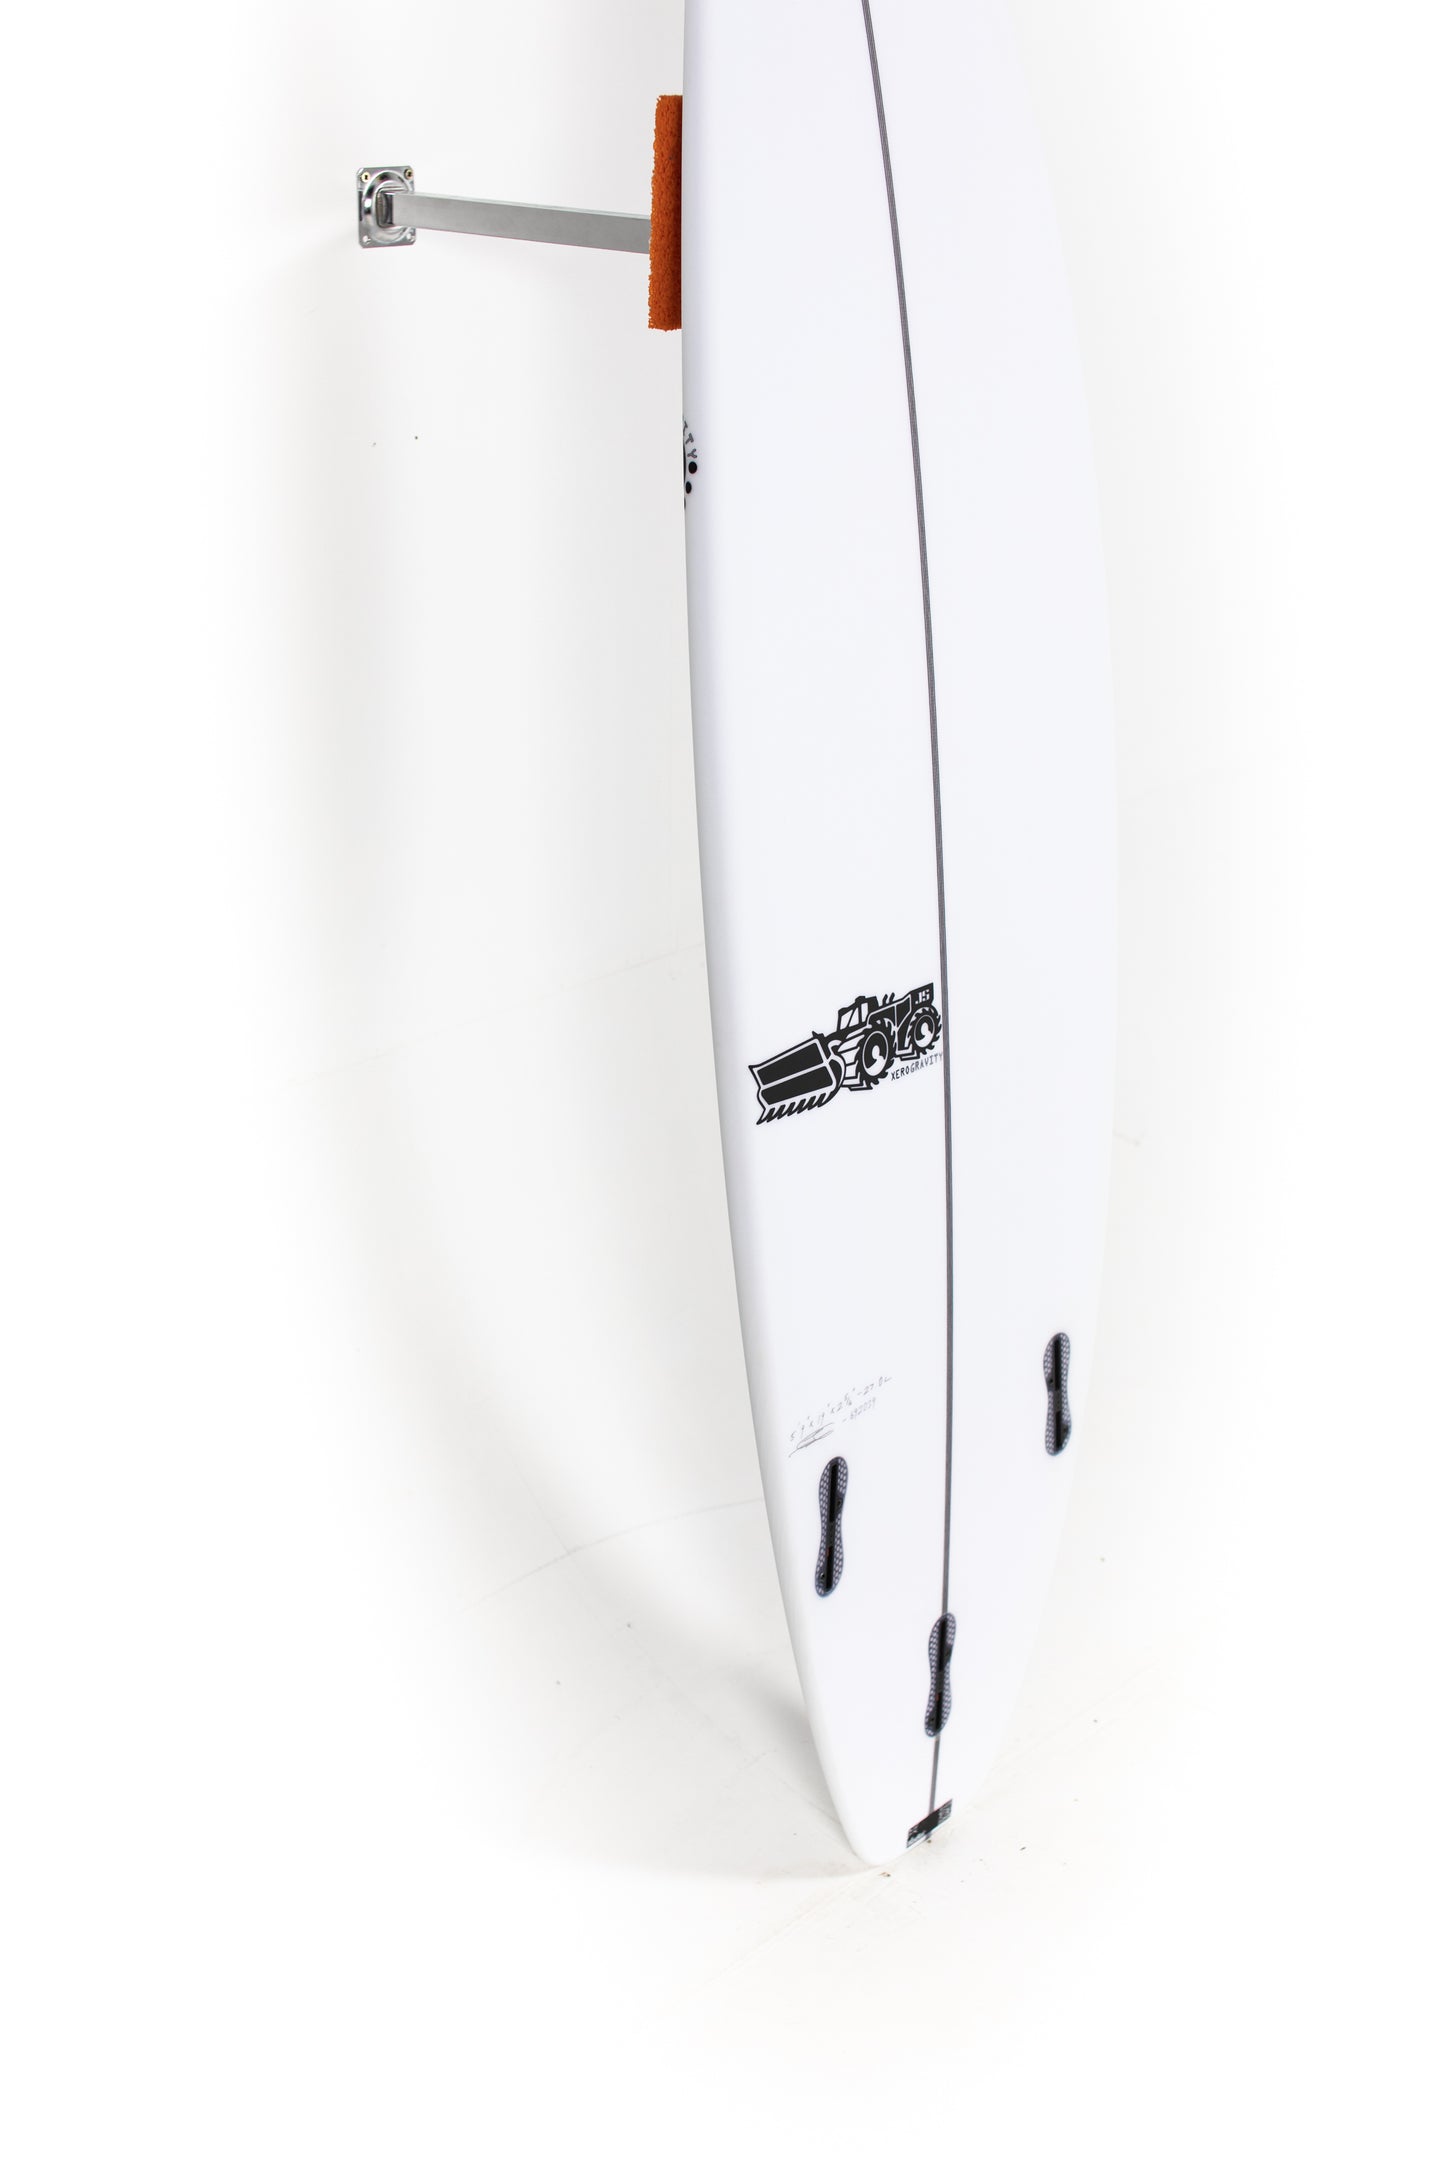 JS Surfboards - XERO GRAVITY - 5'9